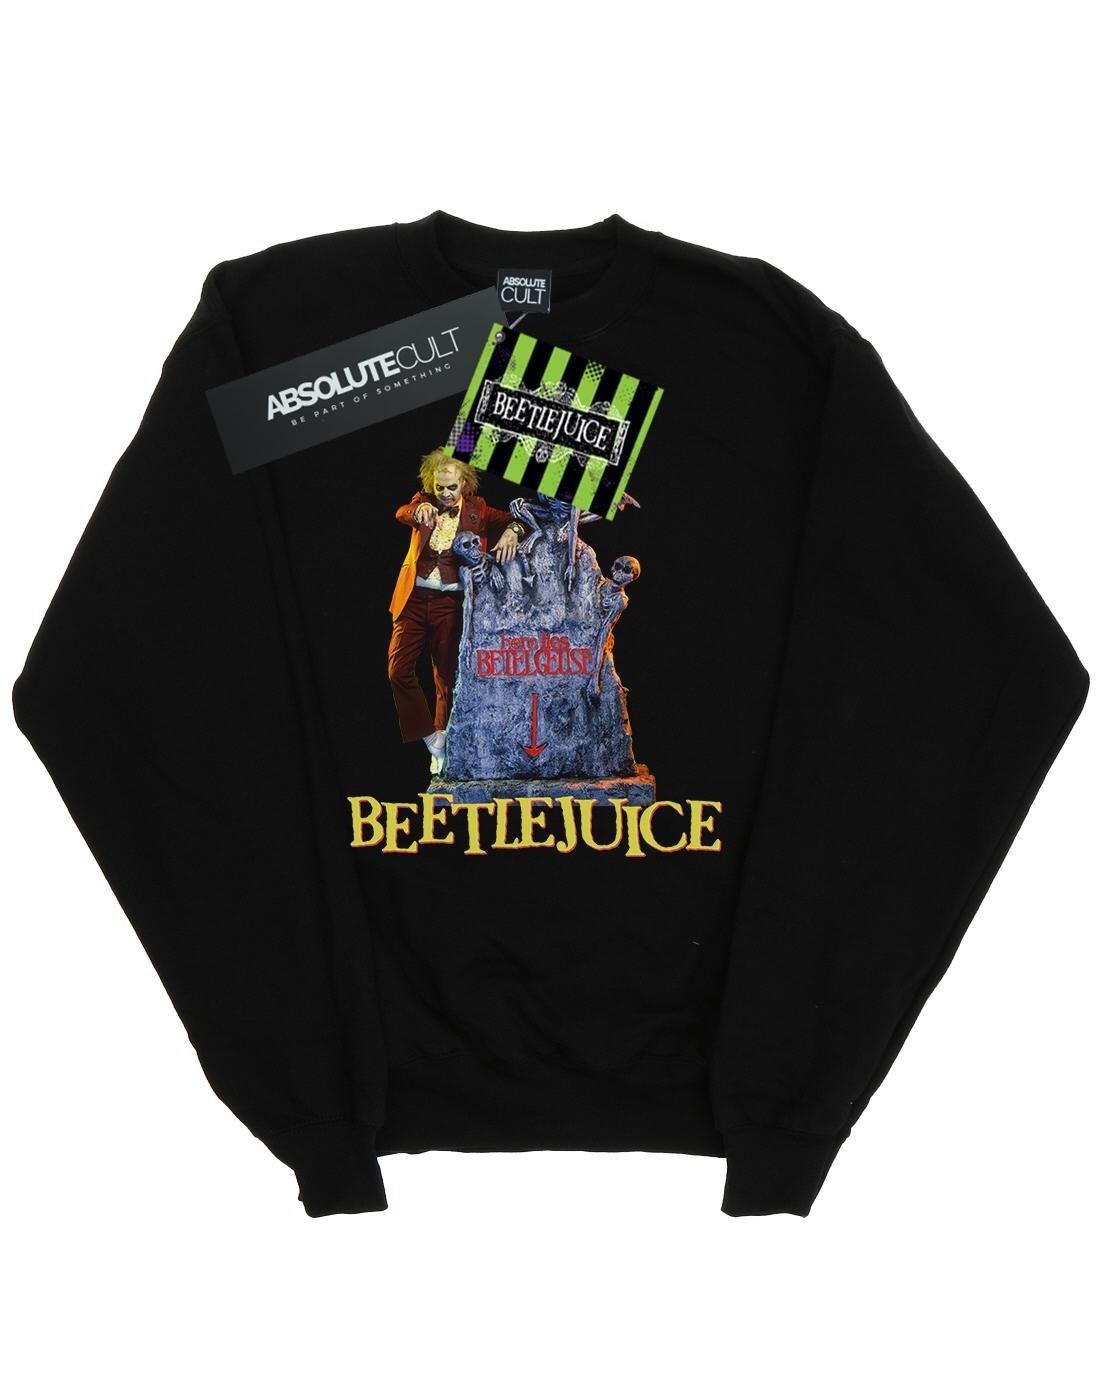 Beetlejuice  Here Lies Sweatshirt 